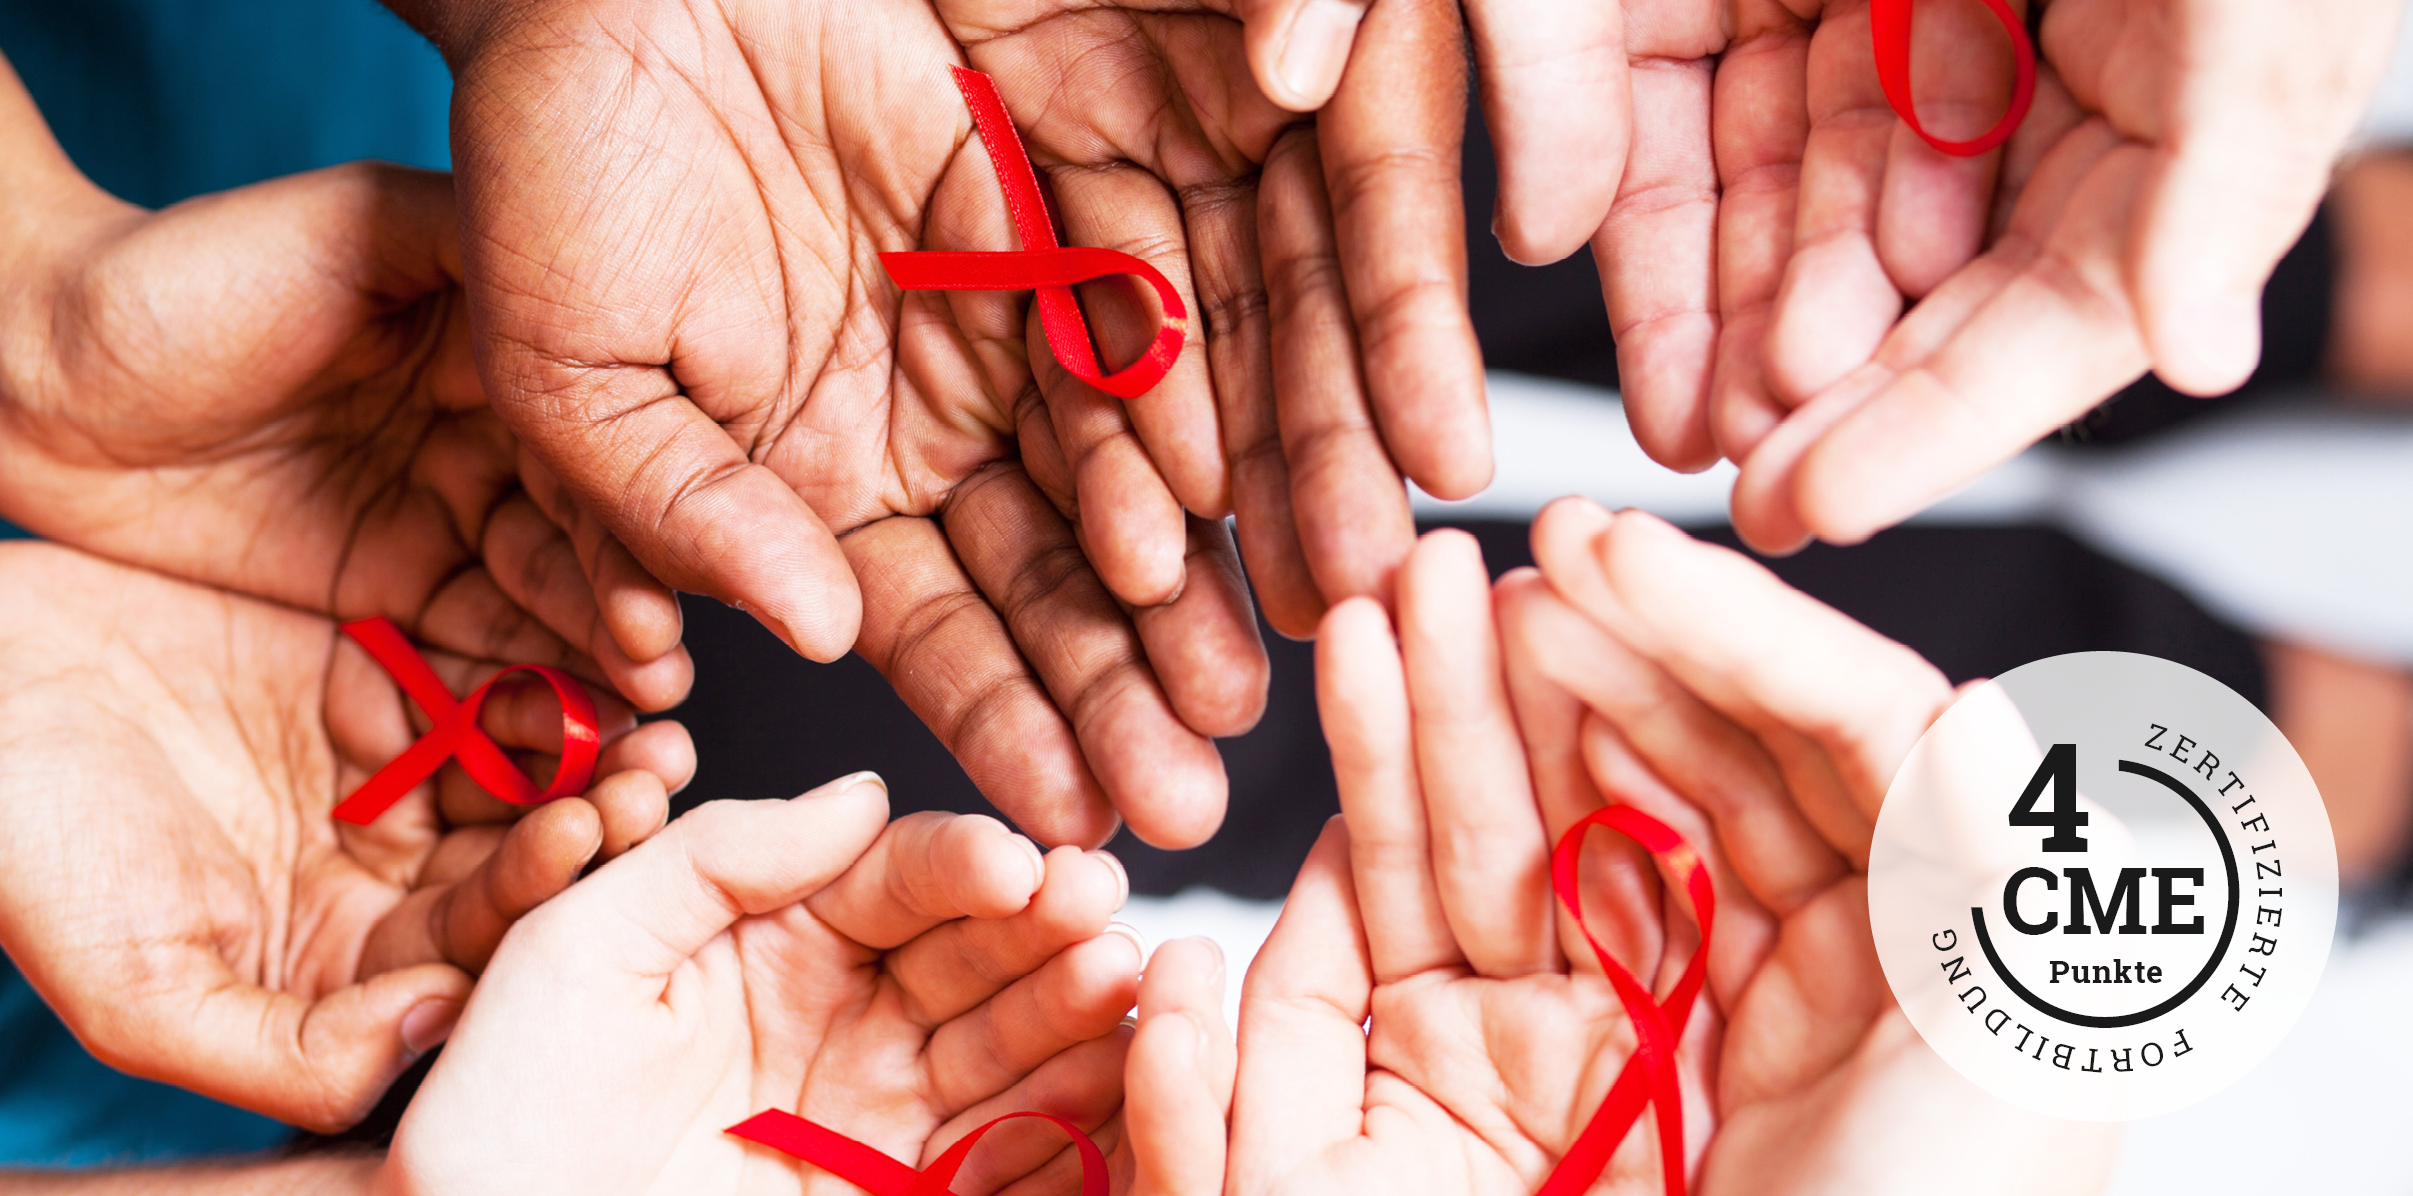 CME zum nachhaltigeren Behandlungserfolg bei HIV – Moderne Therapieziele im Fokus